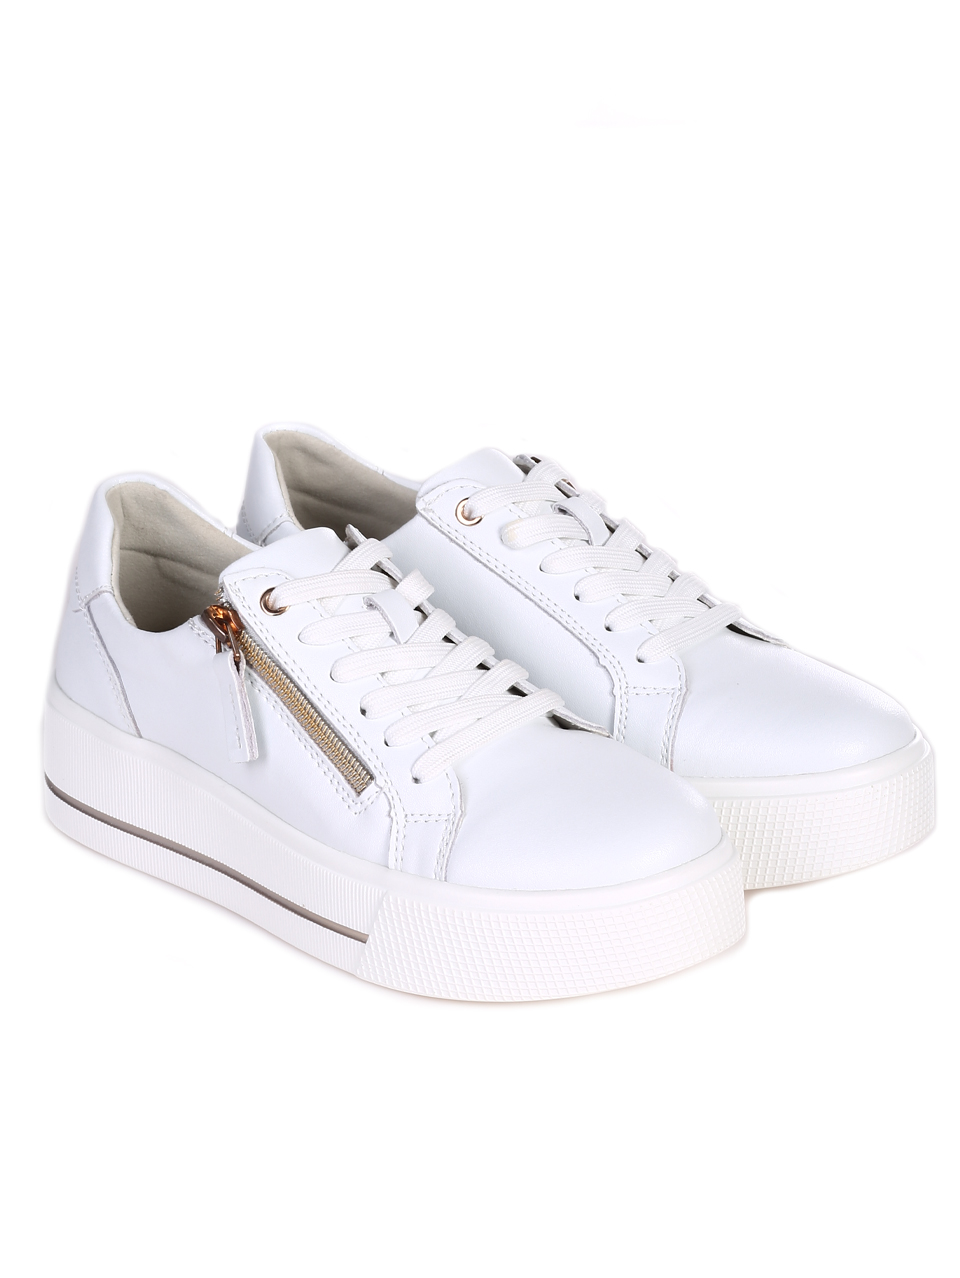 Eжедневни дамски обувки от естествена кожа в бяло 3AF-24109 white